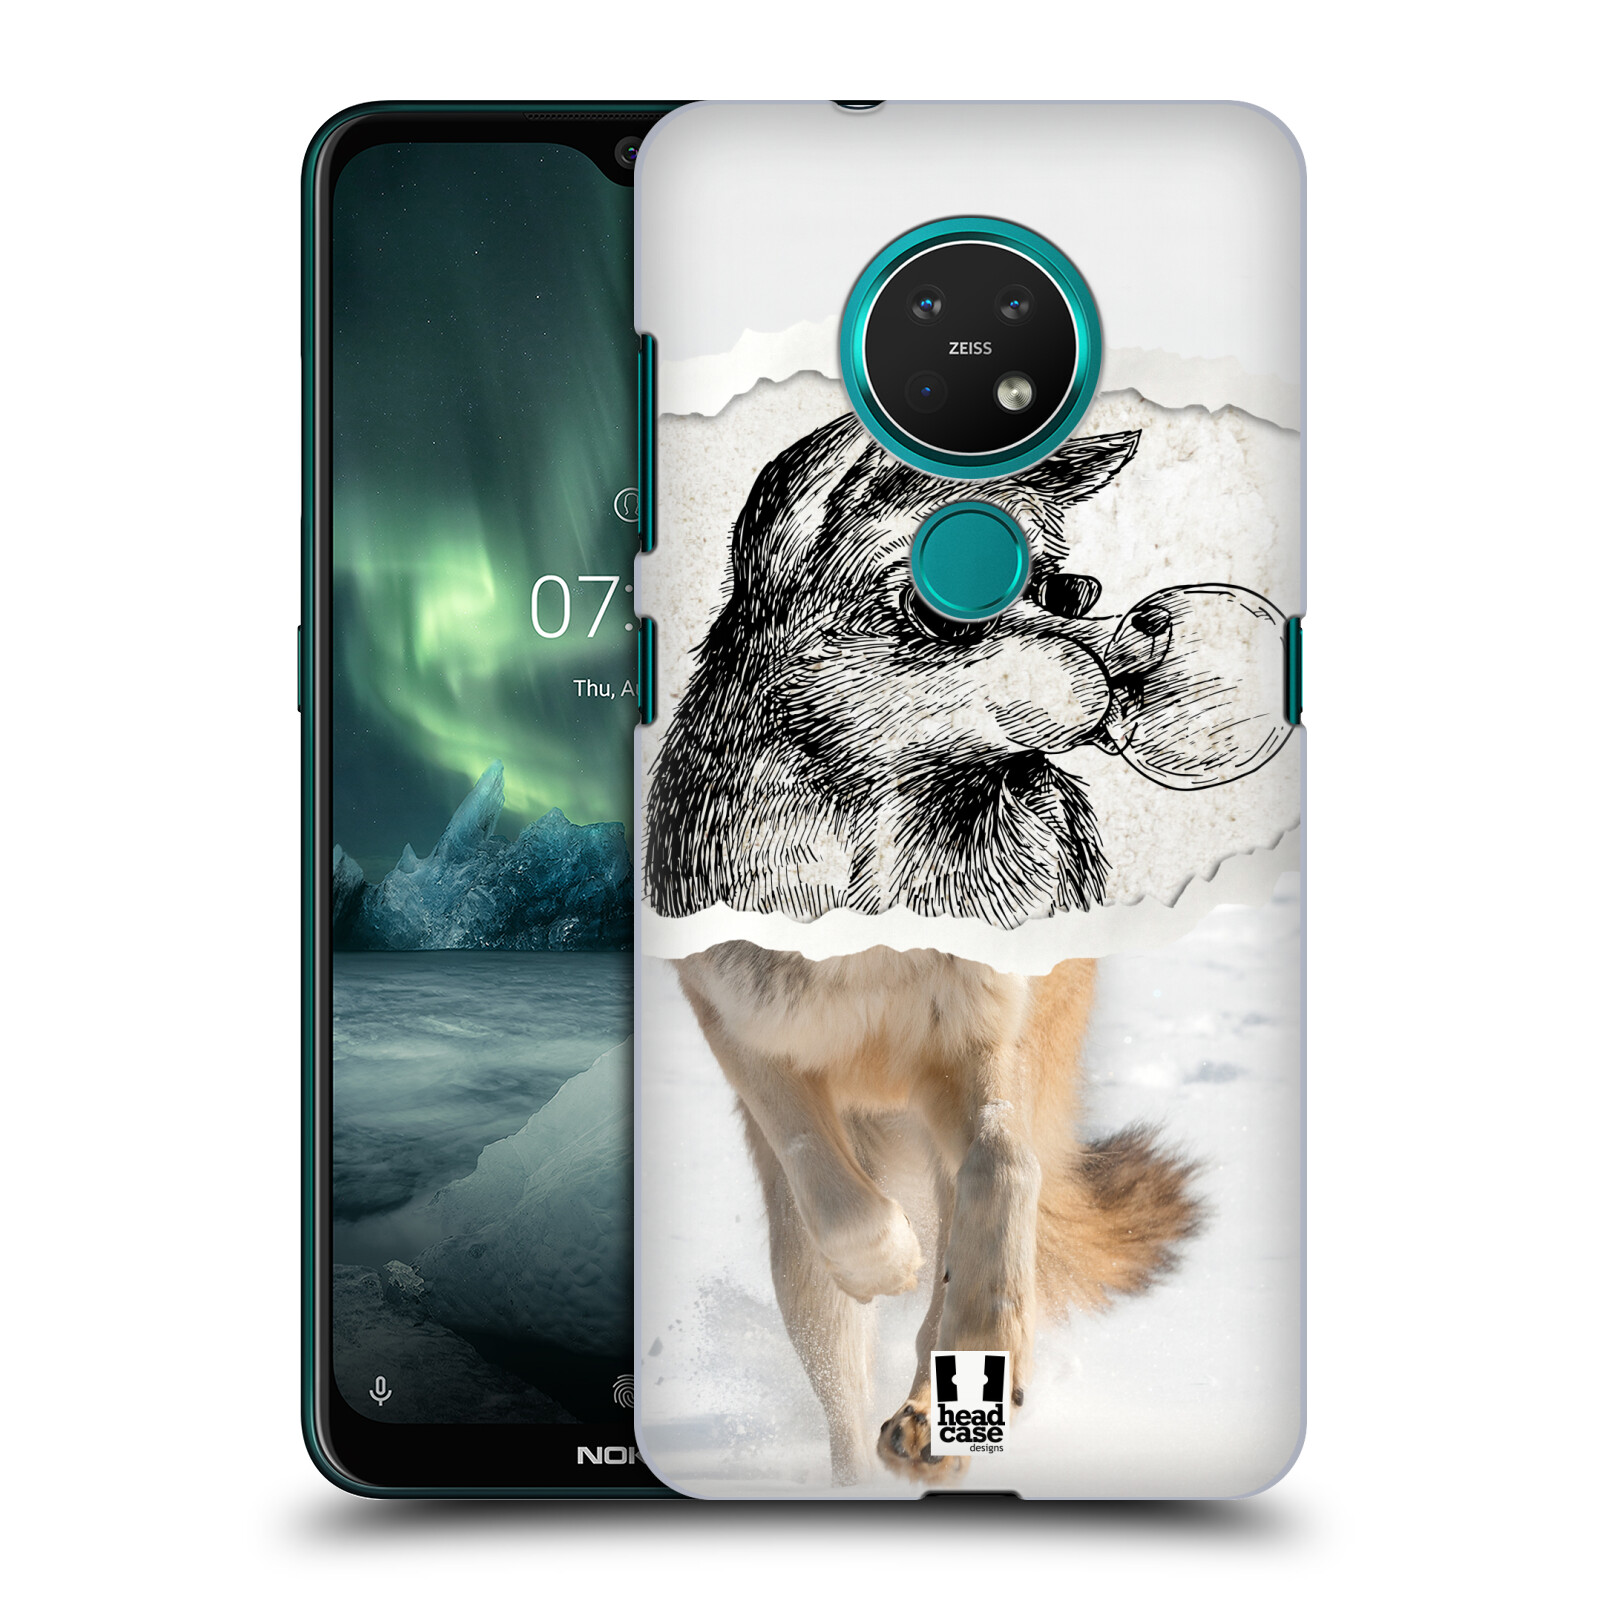 Pouzdro na mobil NOKIA 7.2 - HEAD CASE - vzor zvířata koláž vlk pohodář